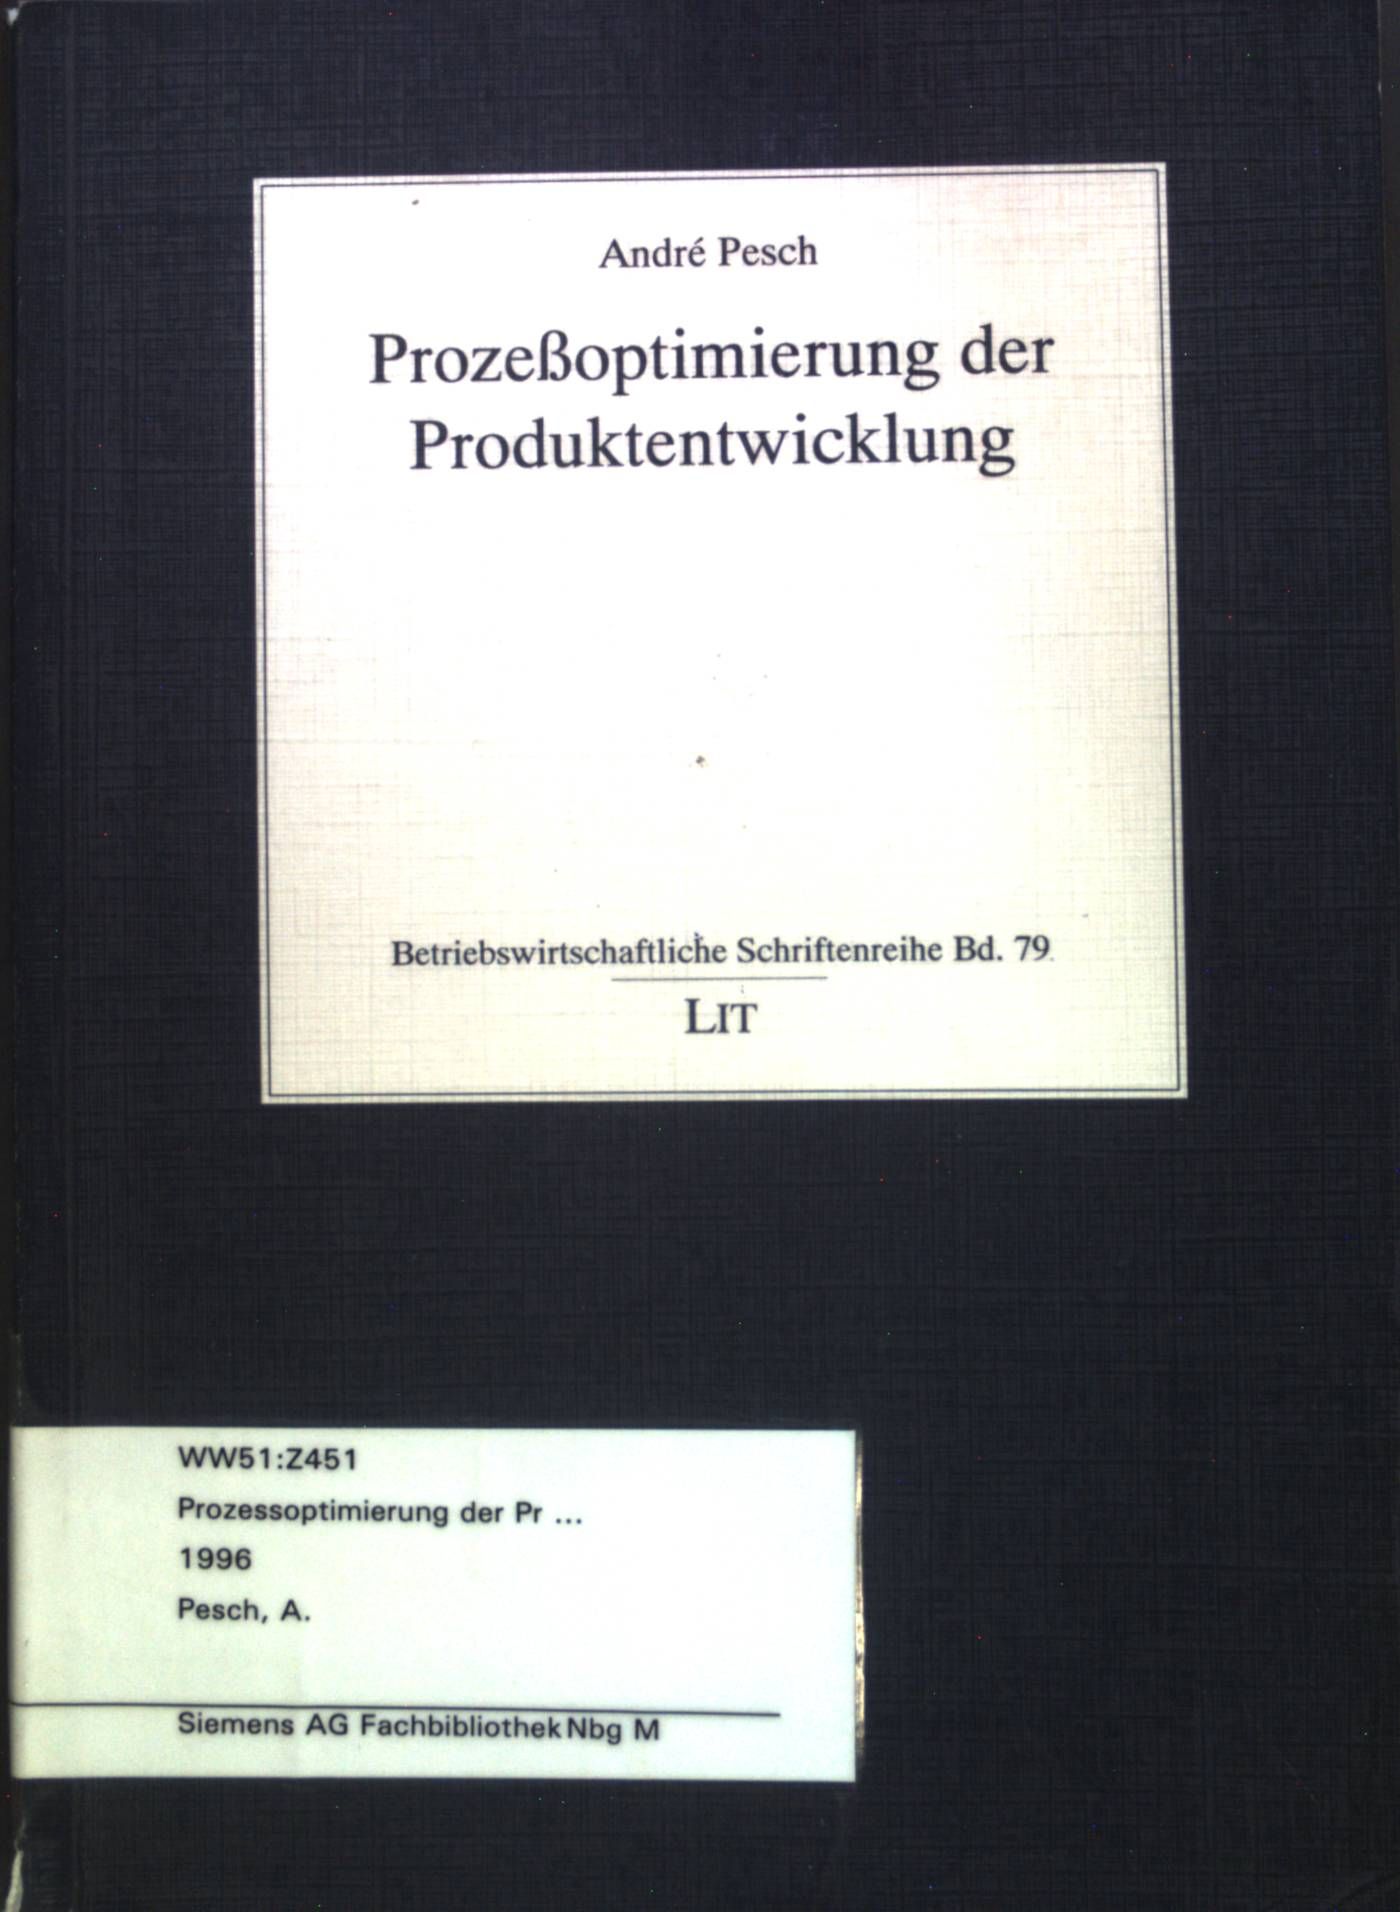 Prozeßoptimierung der Produktentwicklung. Betriebswirtschaftliche Schriftenreihe Band 79. - Pesch, André